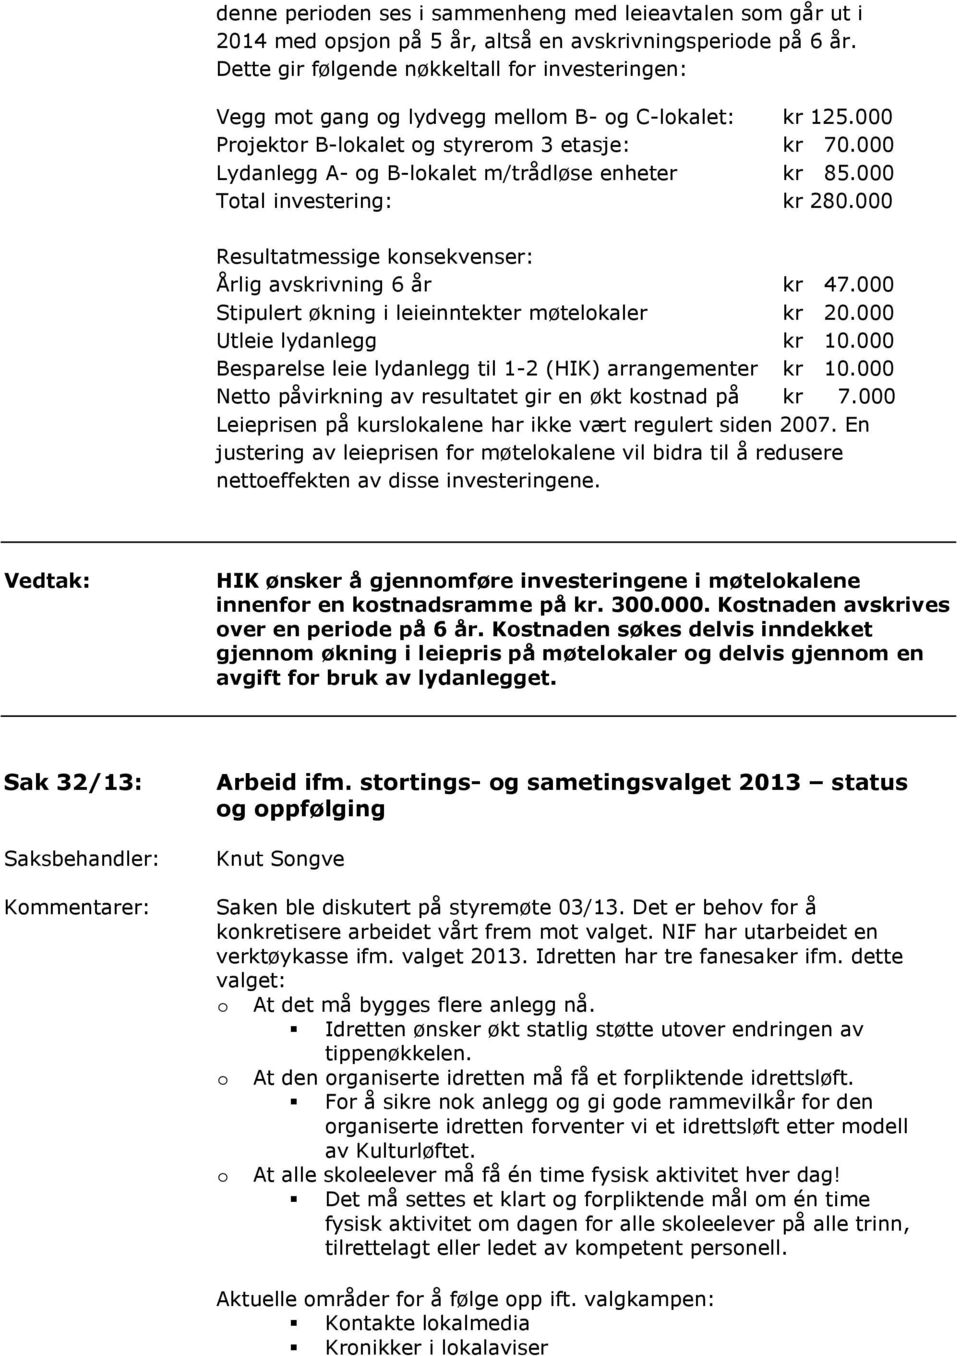 000 Lydanlegg A- og B-lokalet m/trådløse enheter kr 85.000 Total investering: kr 280.000 Resultatmessige konsekvenser: Årlig avskrivning 6 år kr 47.